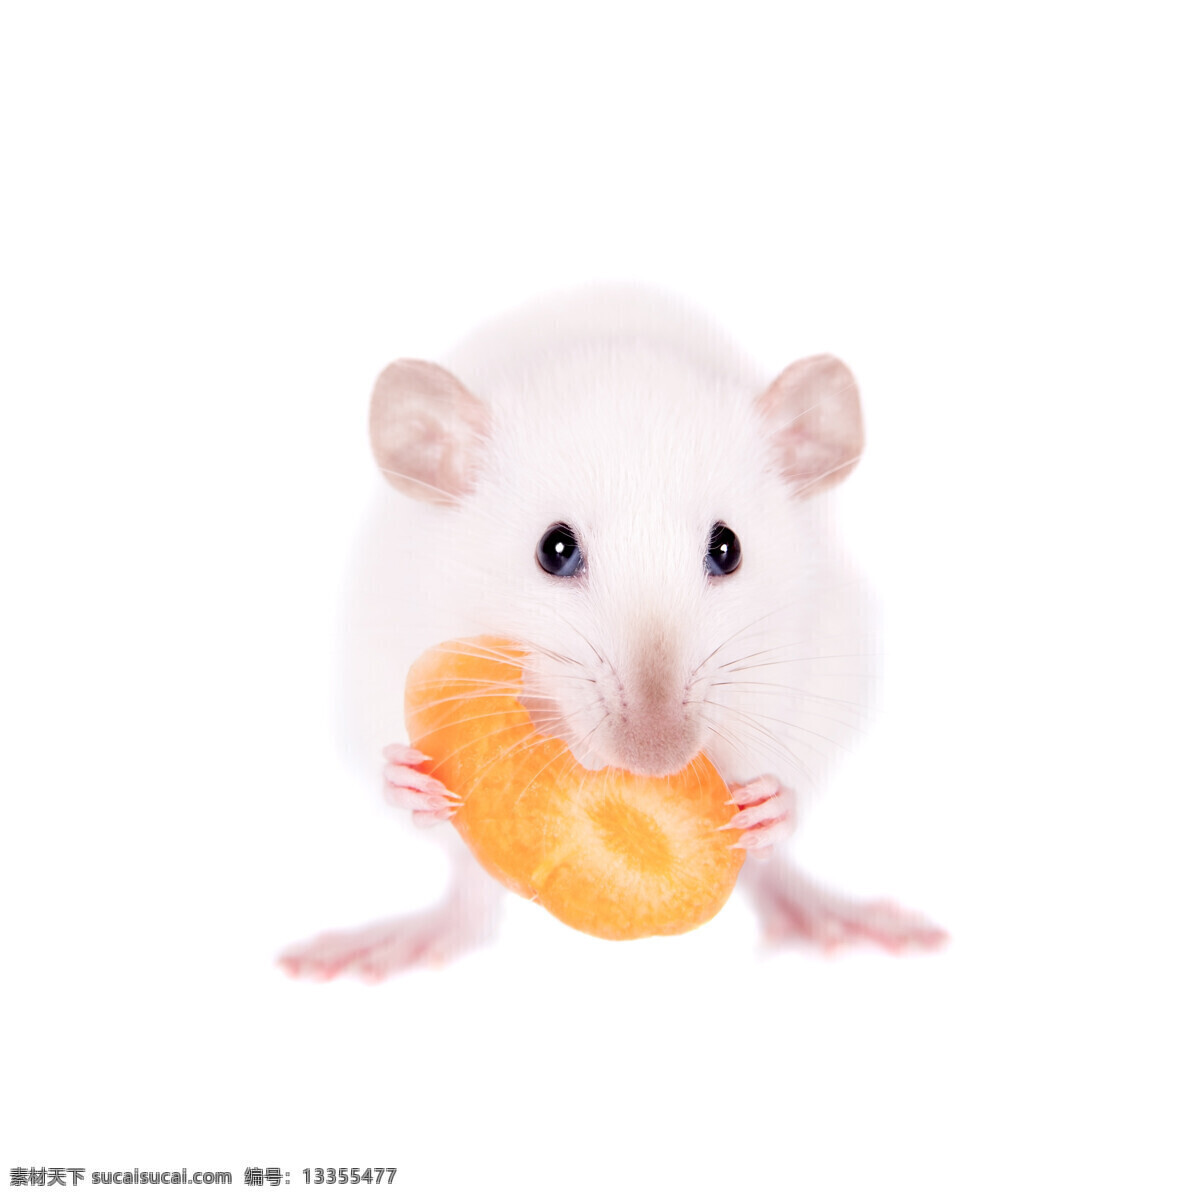 唯美 动物 野生 老鼠 鼠 小白鼠 生物世界 其他生物